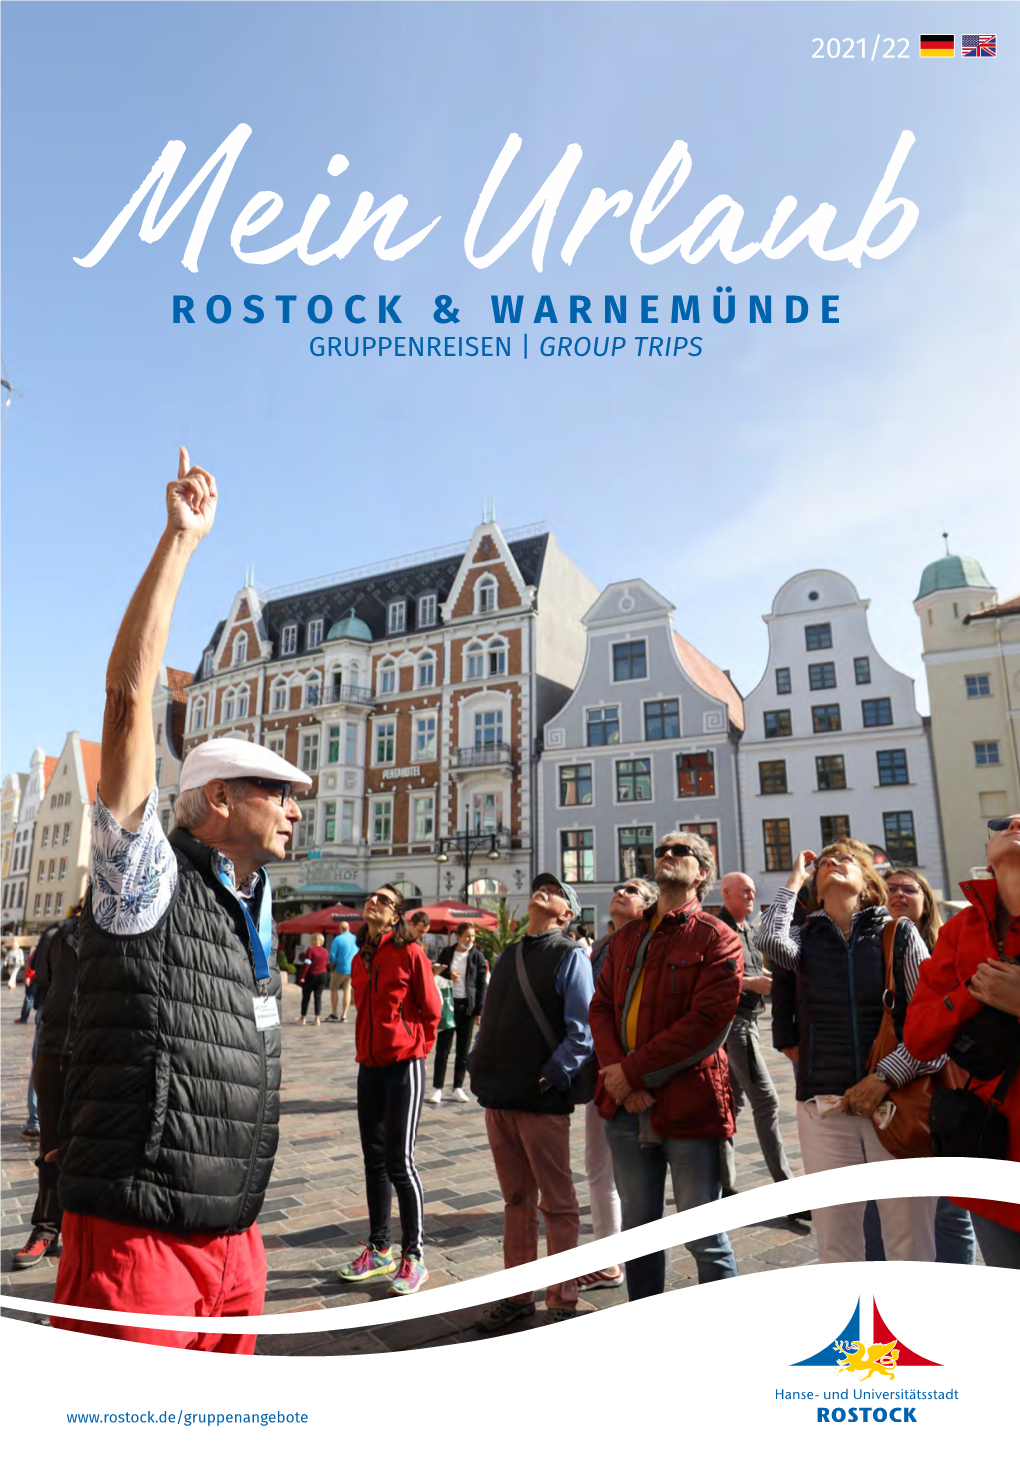 Rostock & Warnemünde